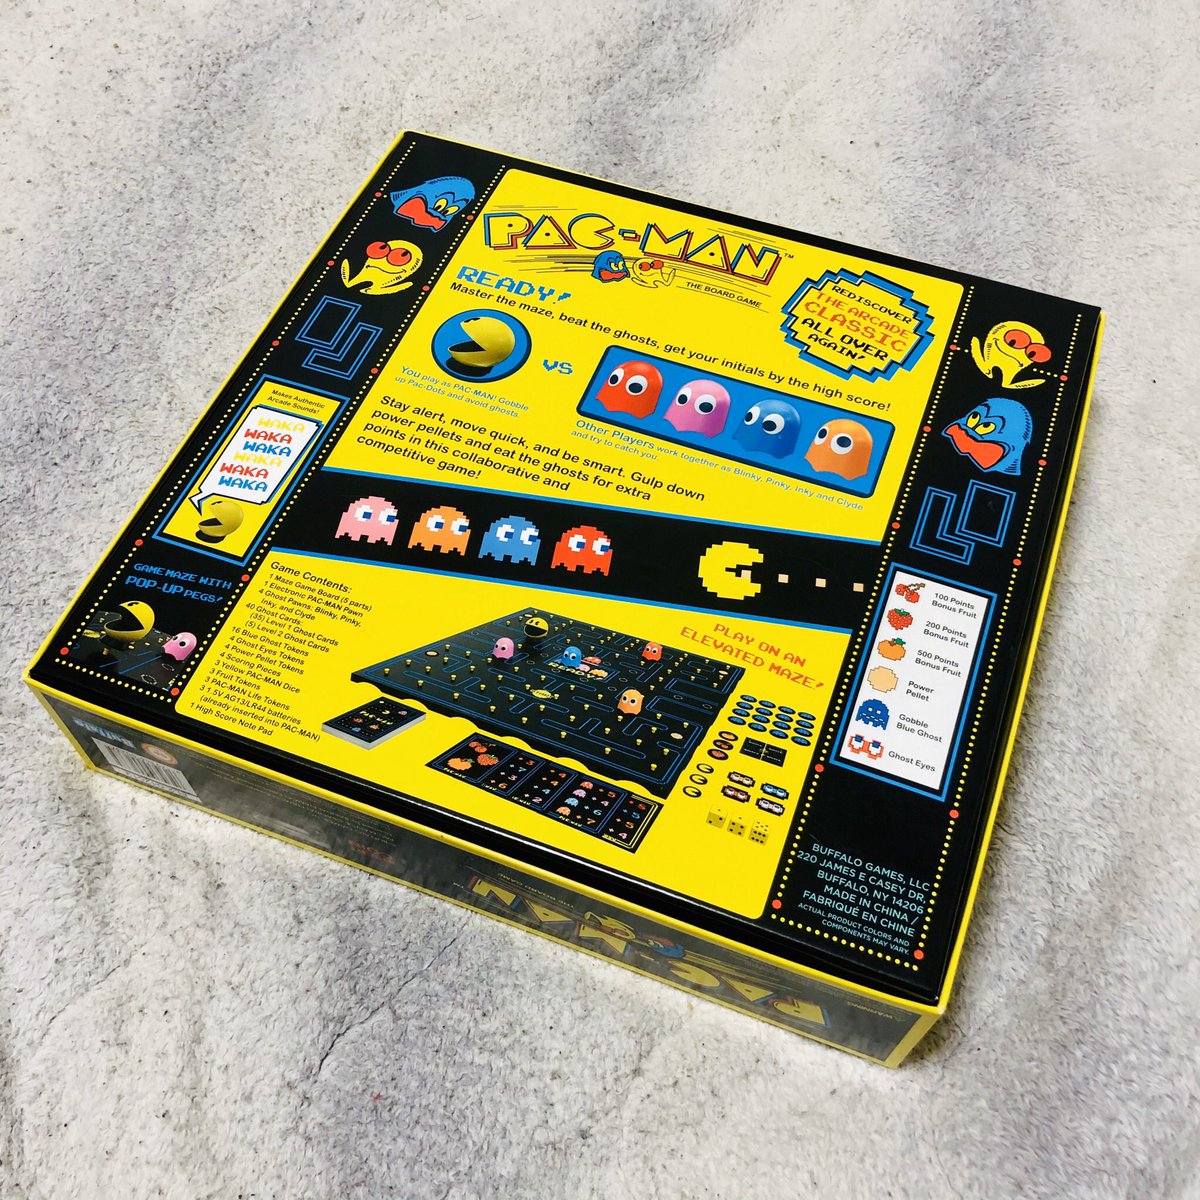 ショウタ パッケージが可愛すぎてパックマンのボードゲームを衝動買いしてしまいました 問題は一緒に遊ぶ友達がいないことです